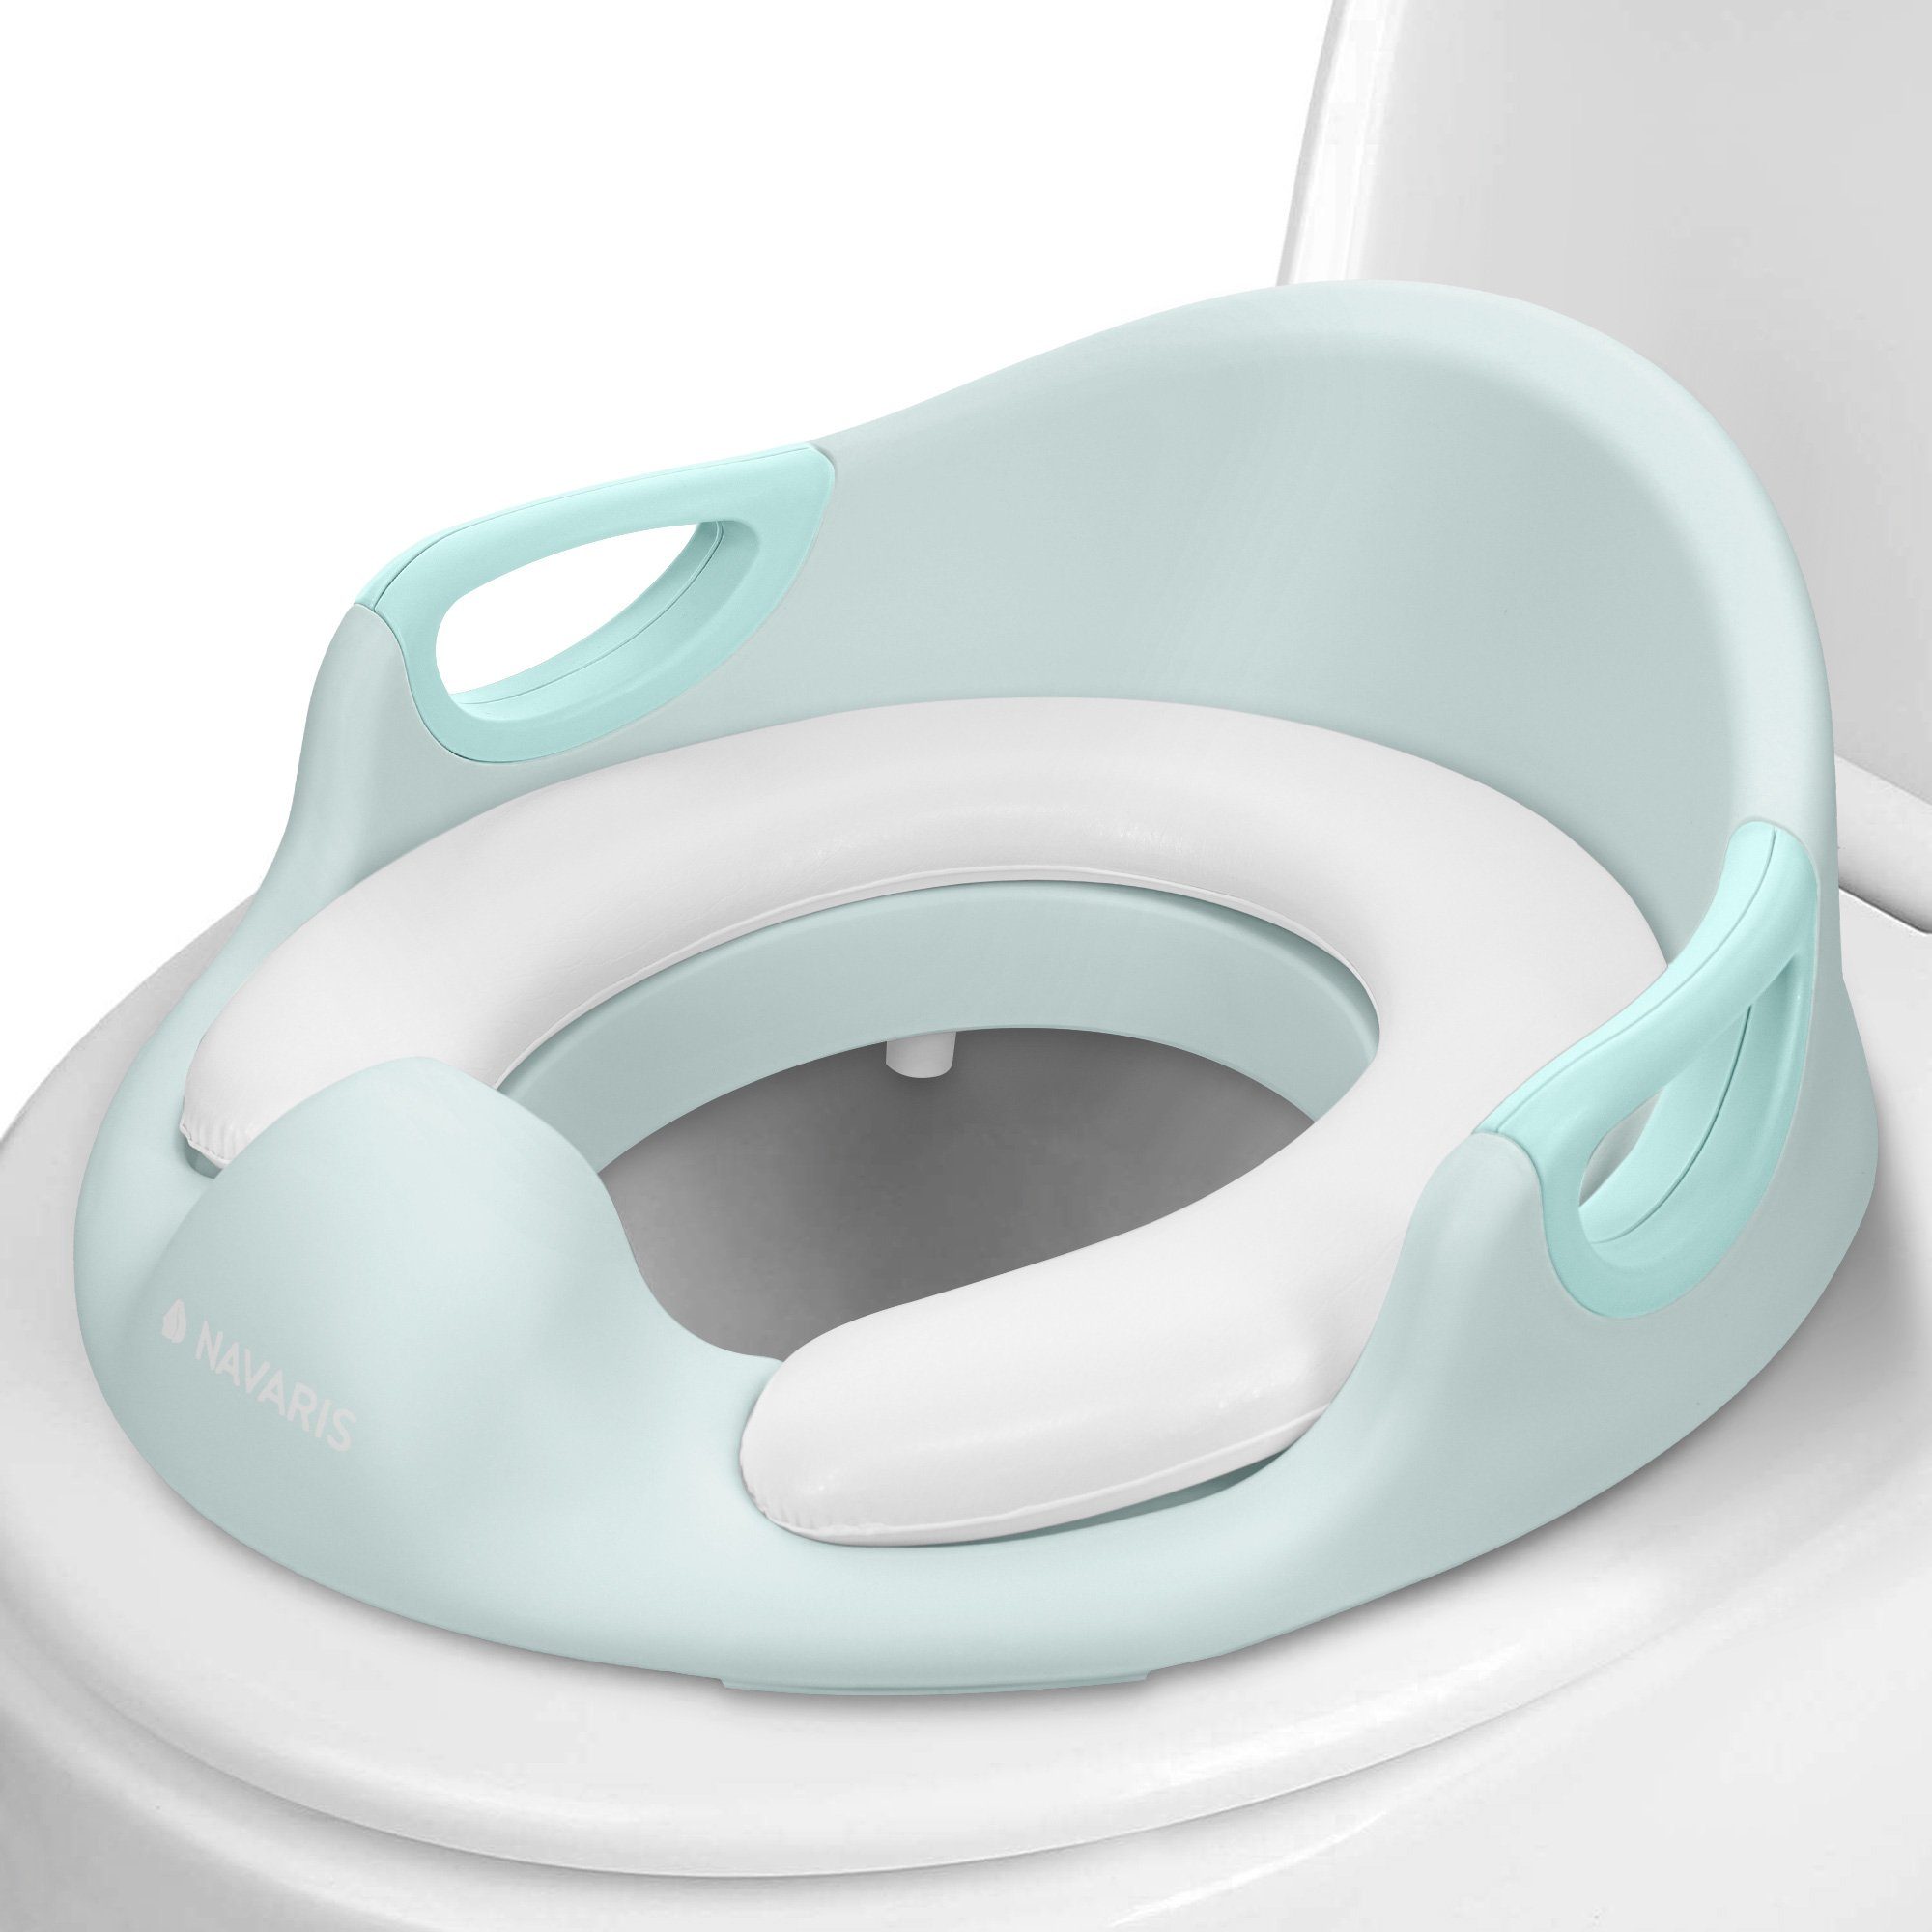 Navaris Baby-Toilettensitz Kinder Toilettensitz WC Aufsatz - 12 Monate bis 7 Jahre - Mintgrün, 18,00 cm